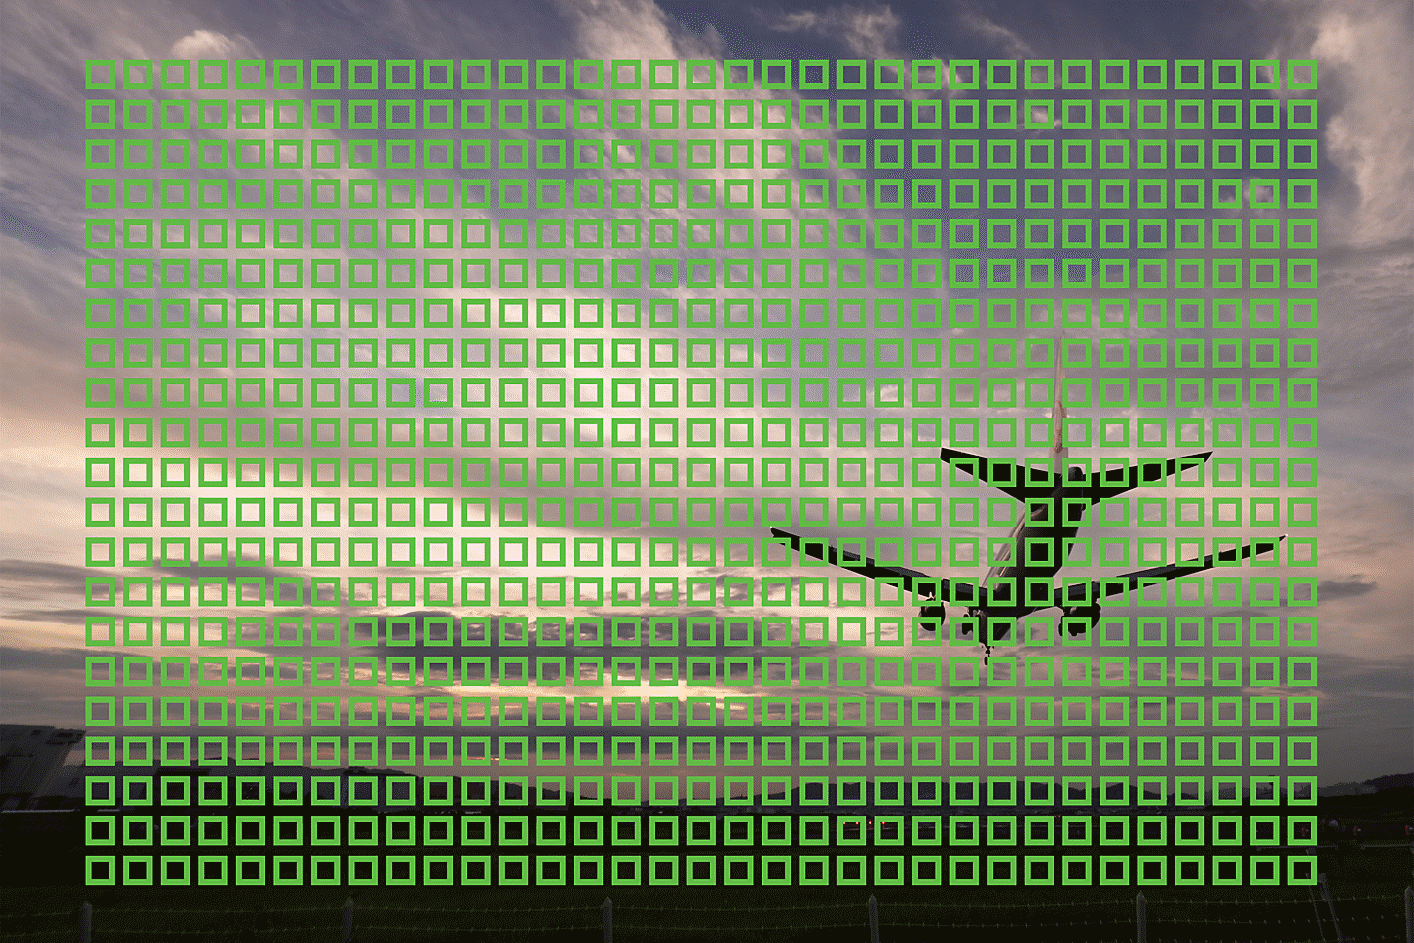 Slika s primerom letala med letom s kvadratki, ki ponazarjajo 693 točk samodejnega ostrenja po sliki